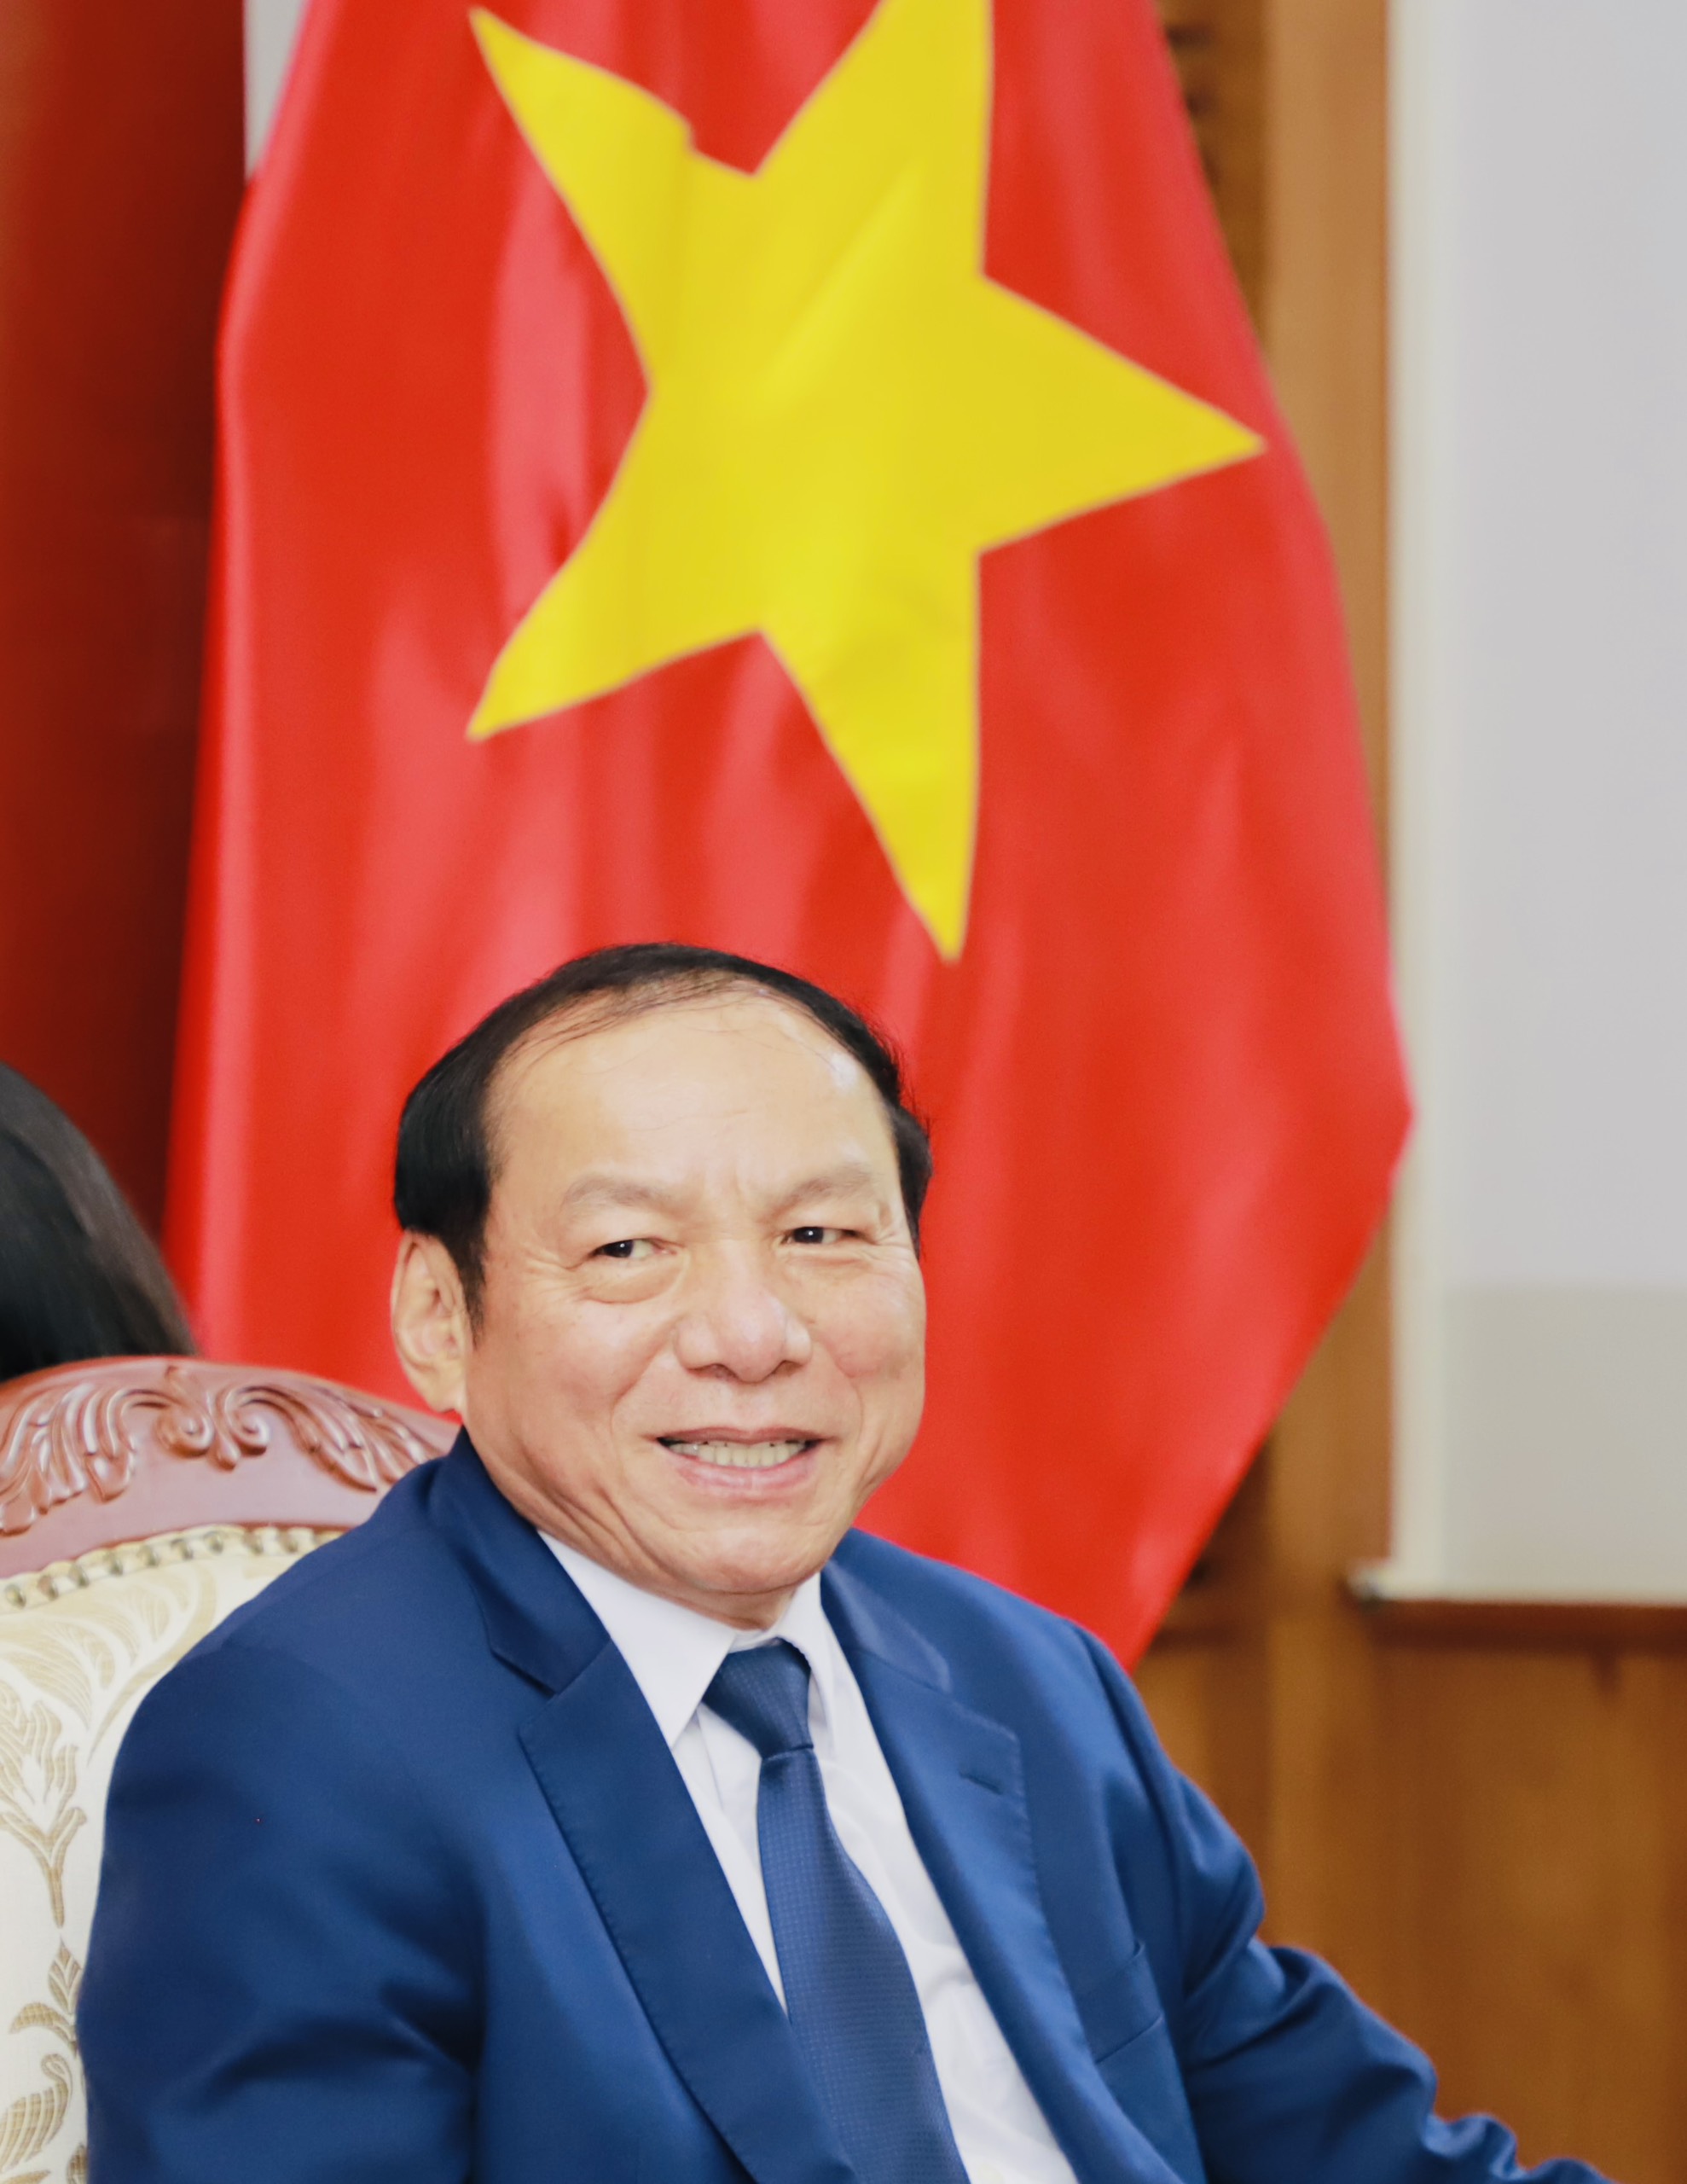 Bộ trưởng Nguyễn Văn Hùng: Đề cao sự tương đồng văn hóa để xây dựng mối quan hệ tốt đẹp, nhân lên khát vọng hòa bình - Ảnh 2.